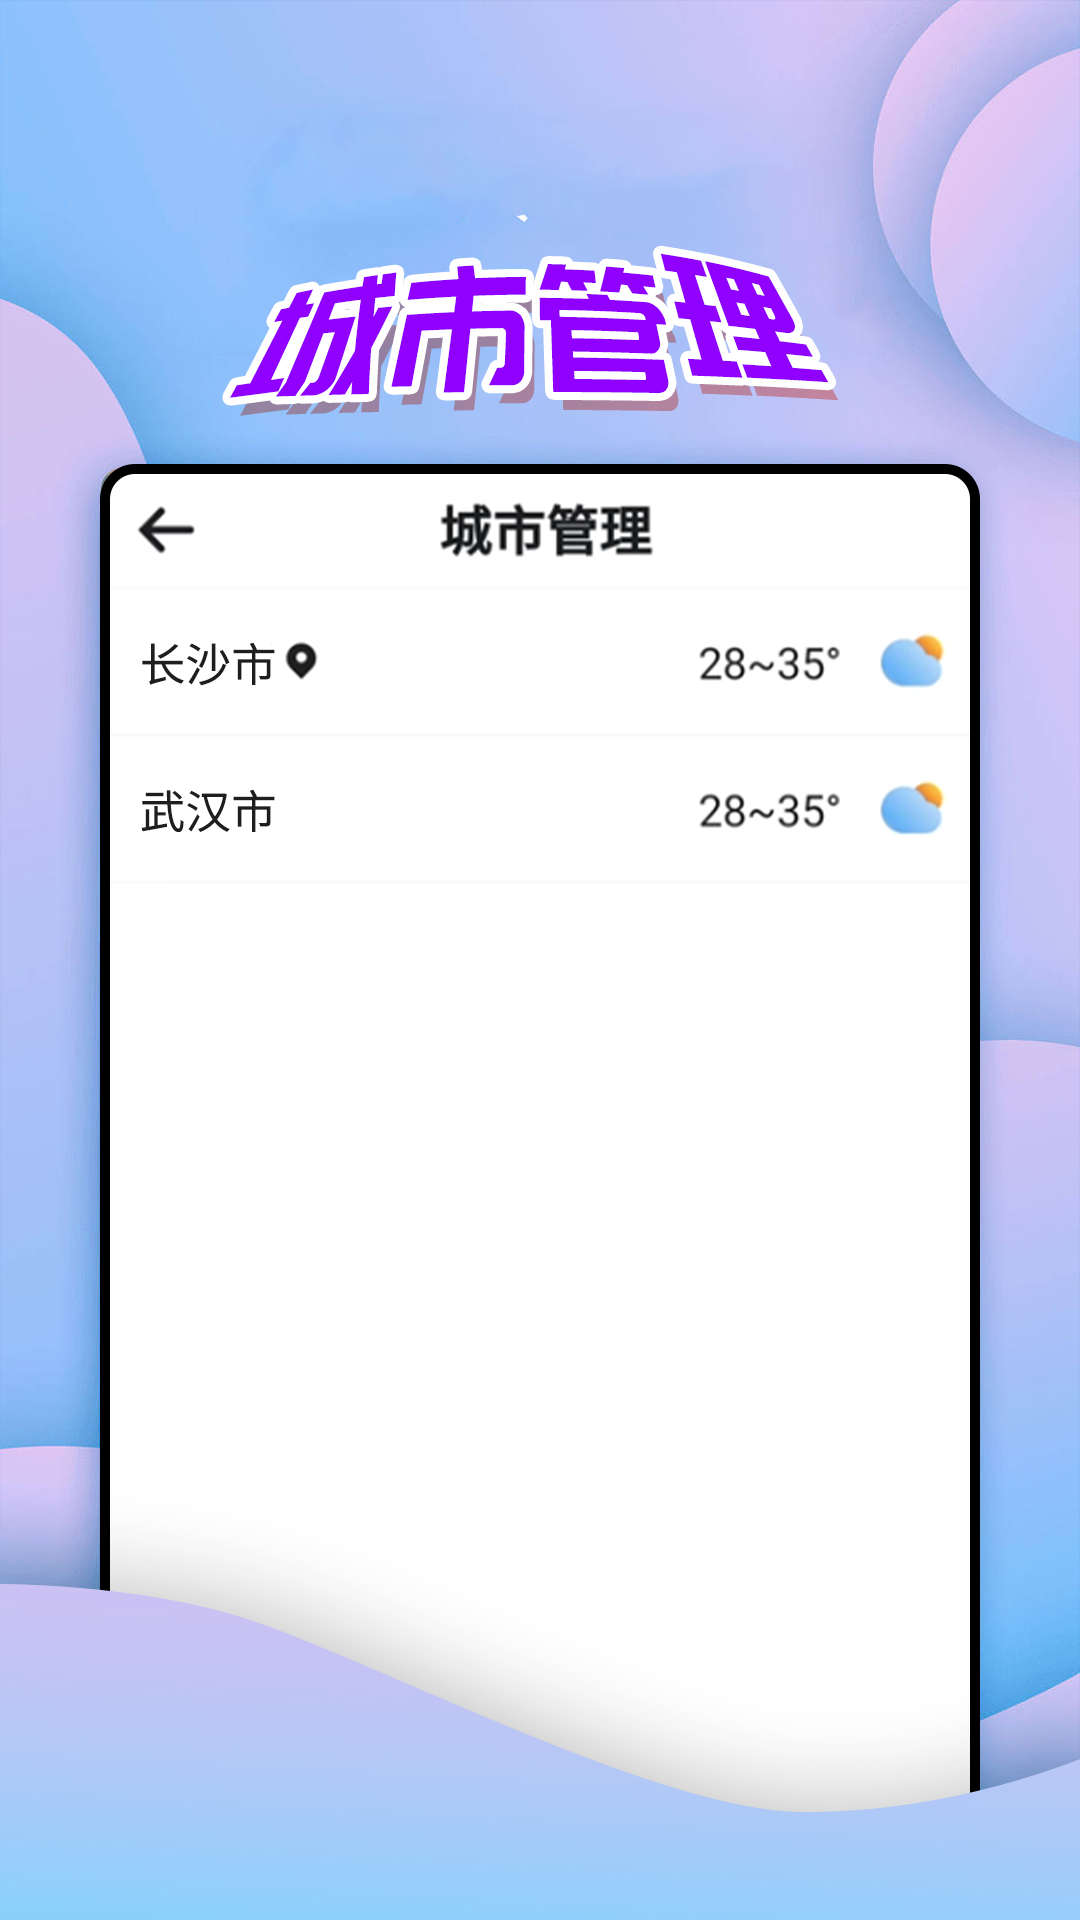 仙仙本地天气通app下载,仙仙本地天气通app官方版 v1.0.0